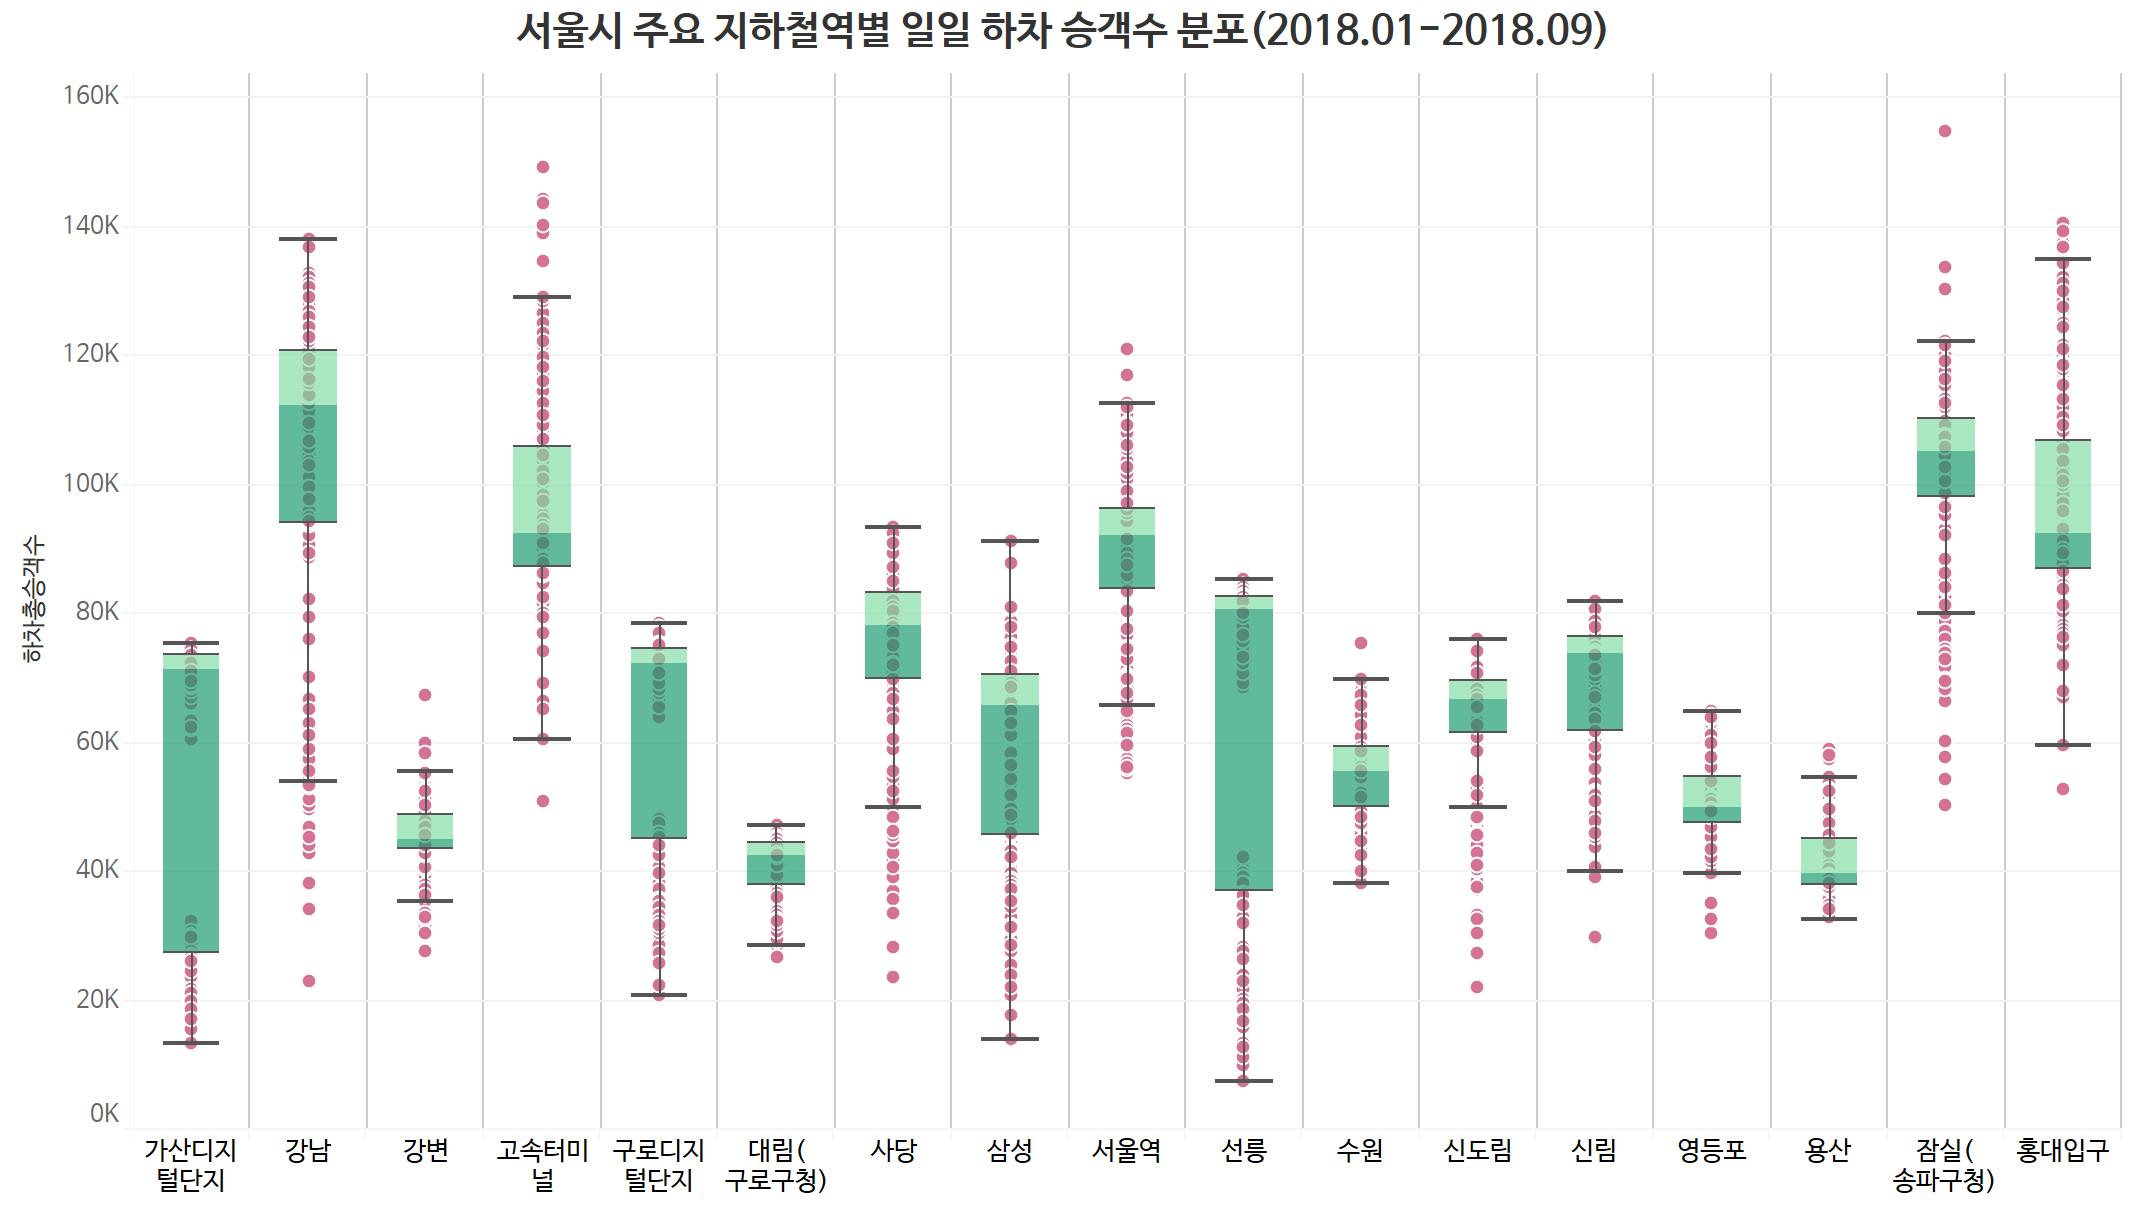 서울시 지하철 주요 역별 일일 최소 하차 승객수 분포 (2018년 1월~9월)